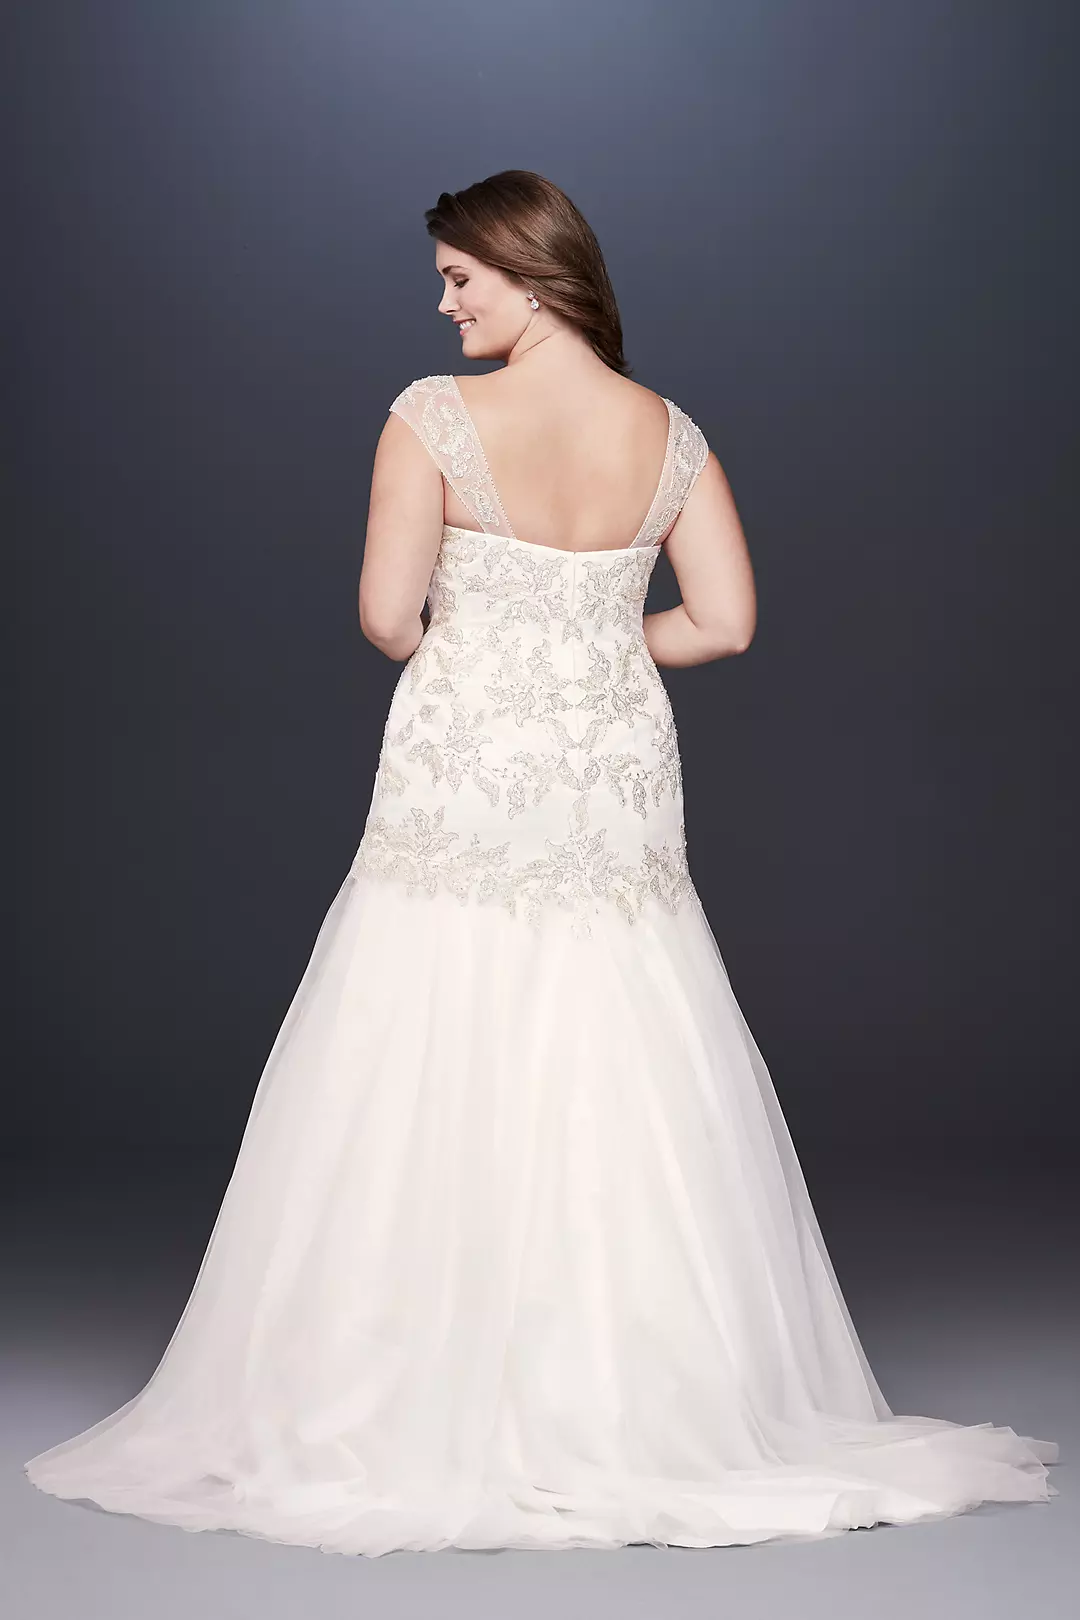 Metallic Lace Applique Plus Size Wedding Dress Image 2